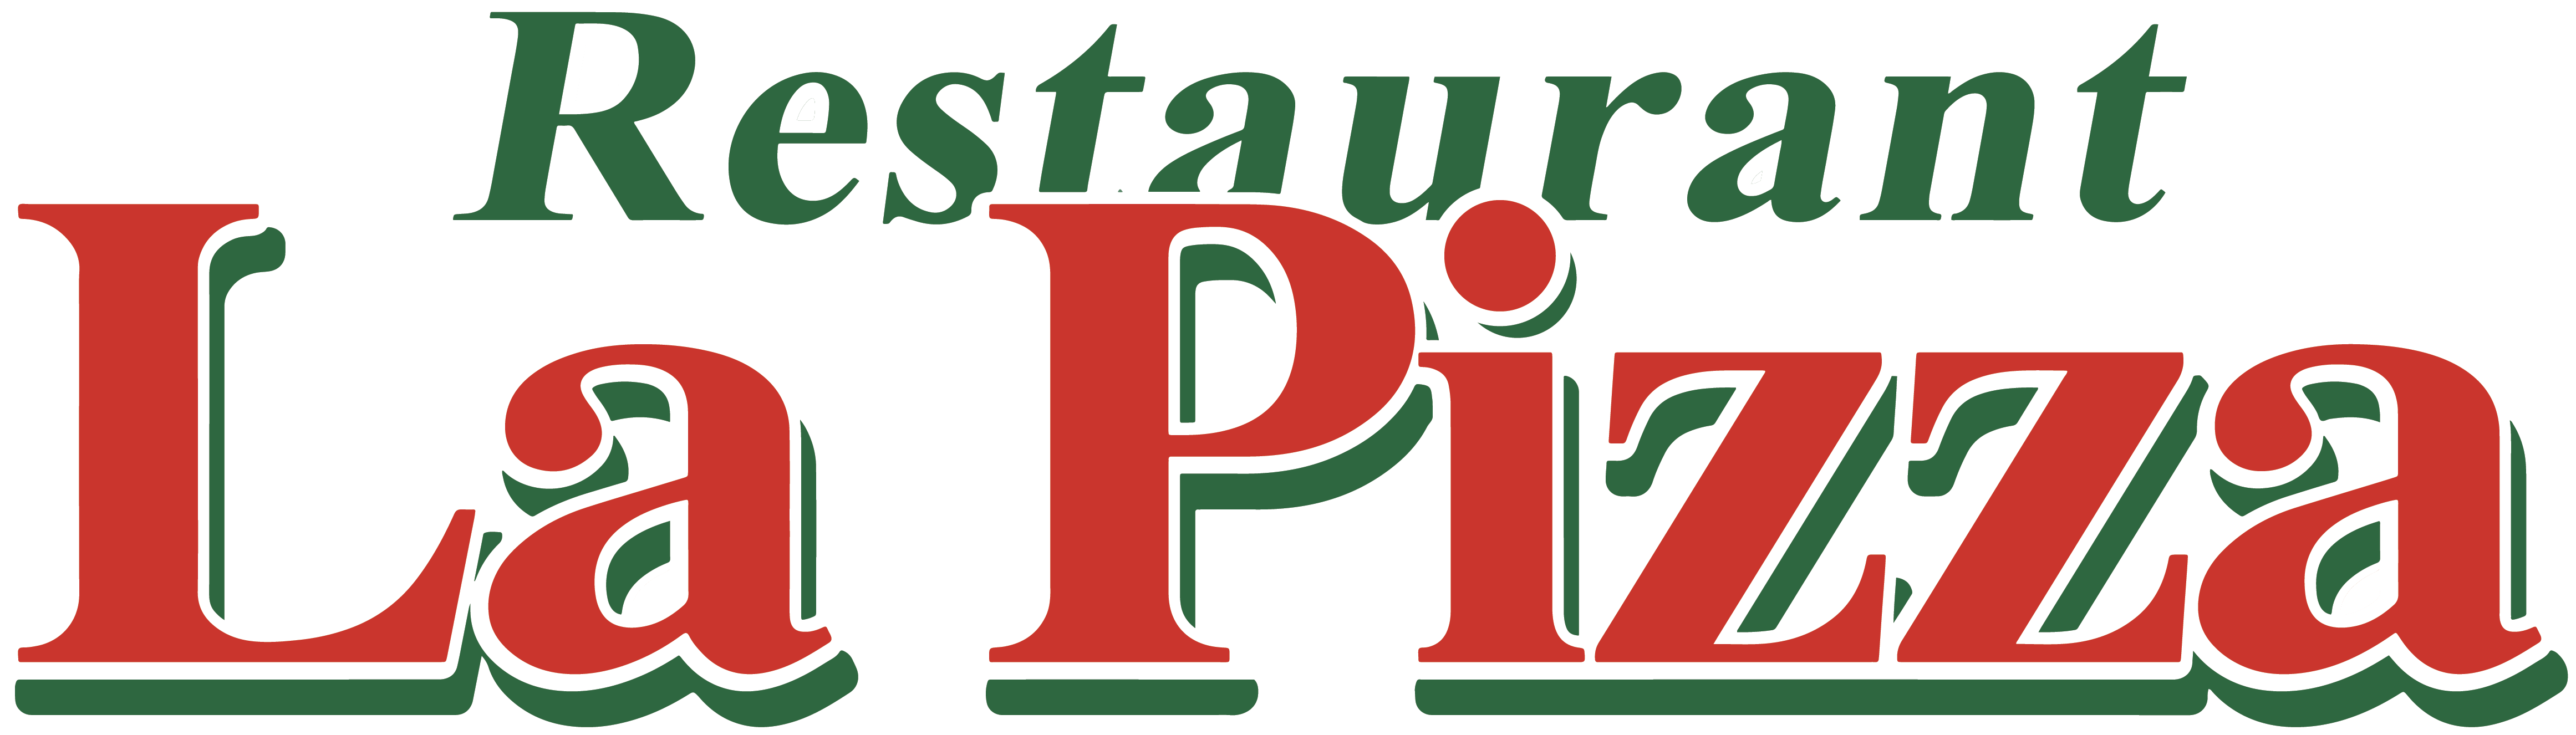 Logo Restaurant la pizza, partenaire officiel de National de Pétanque